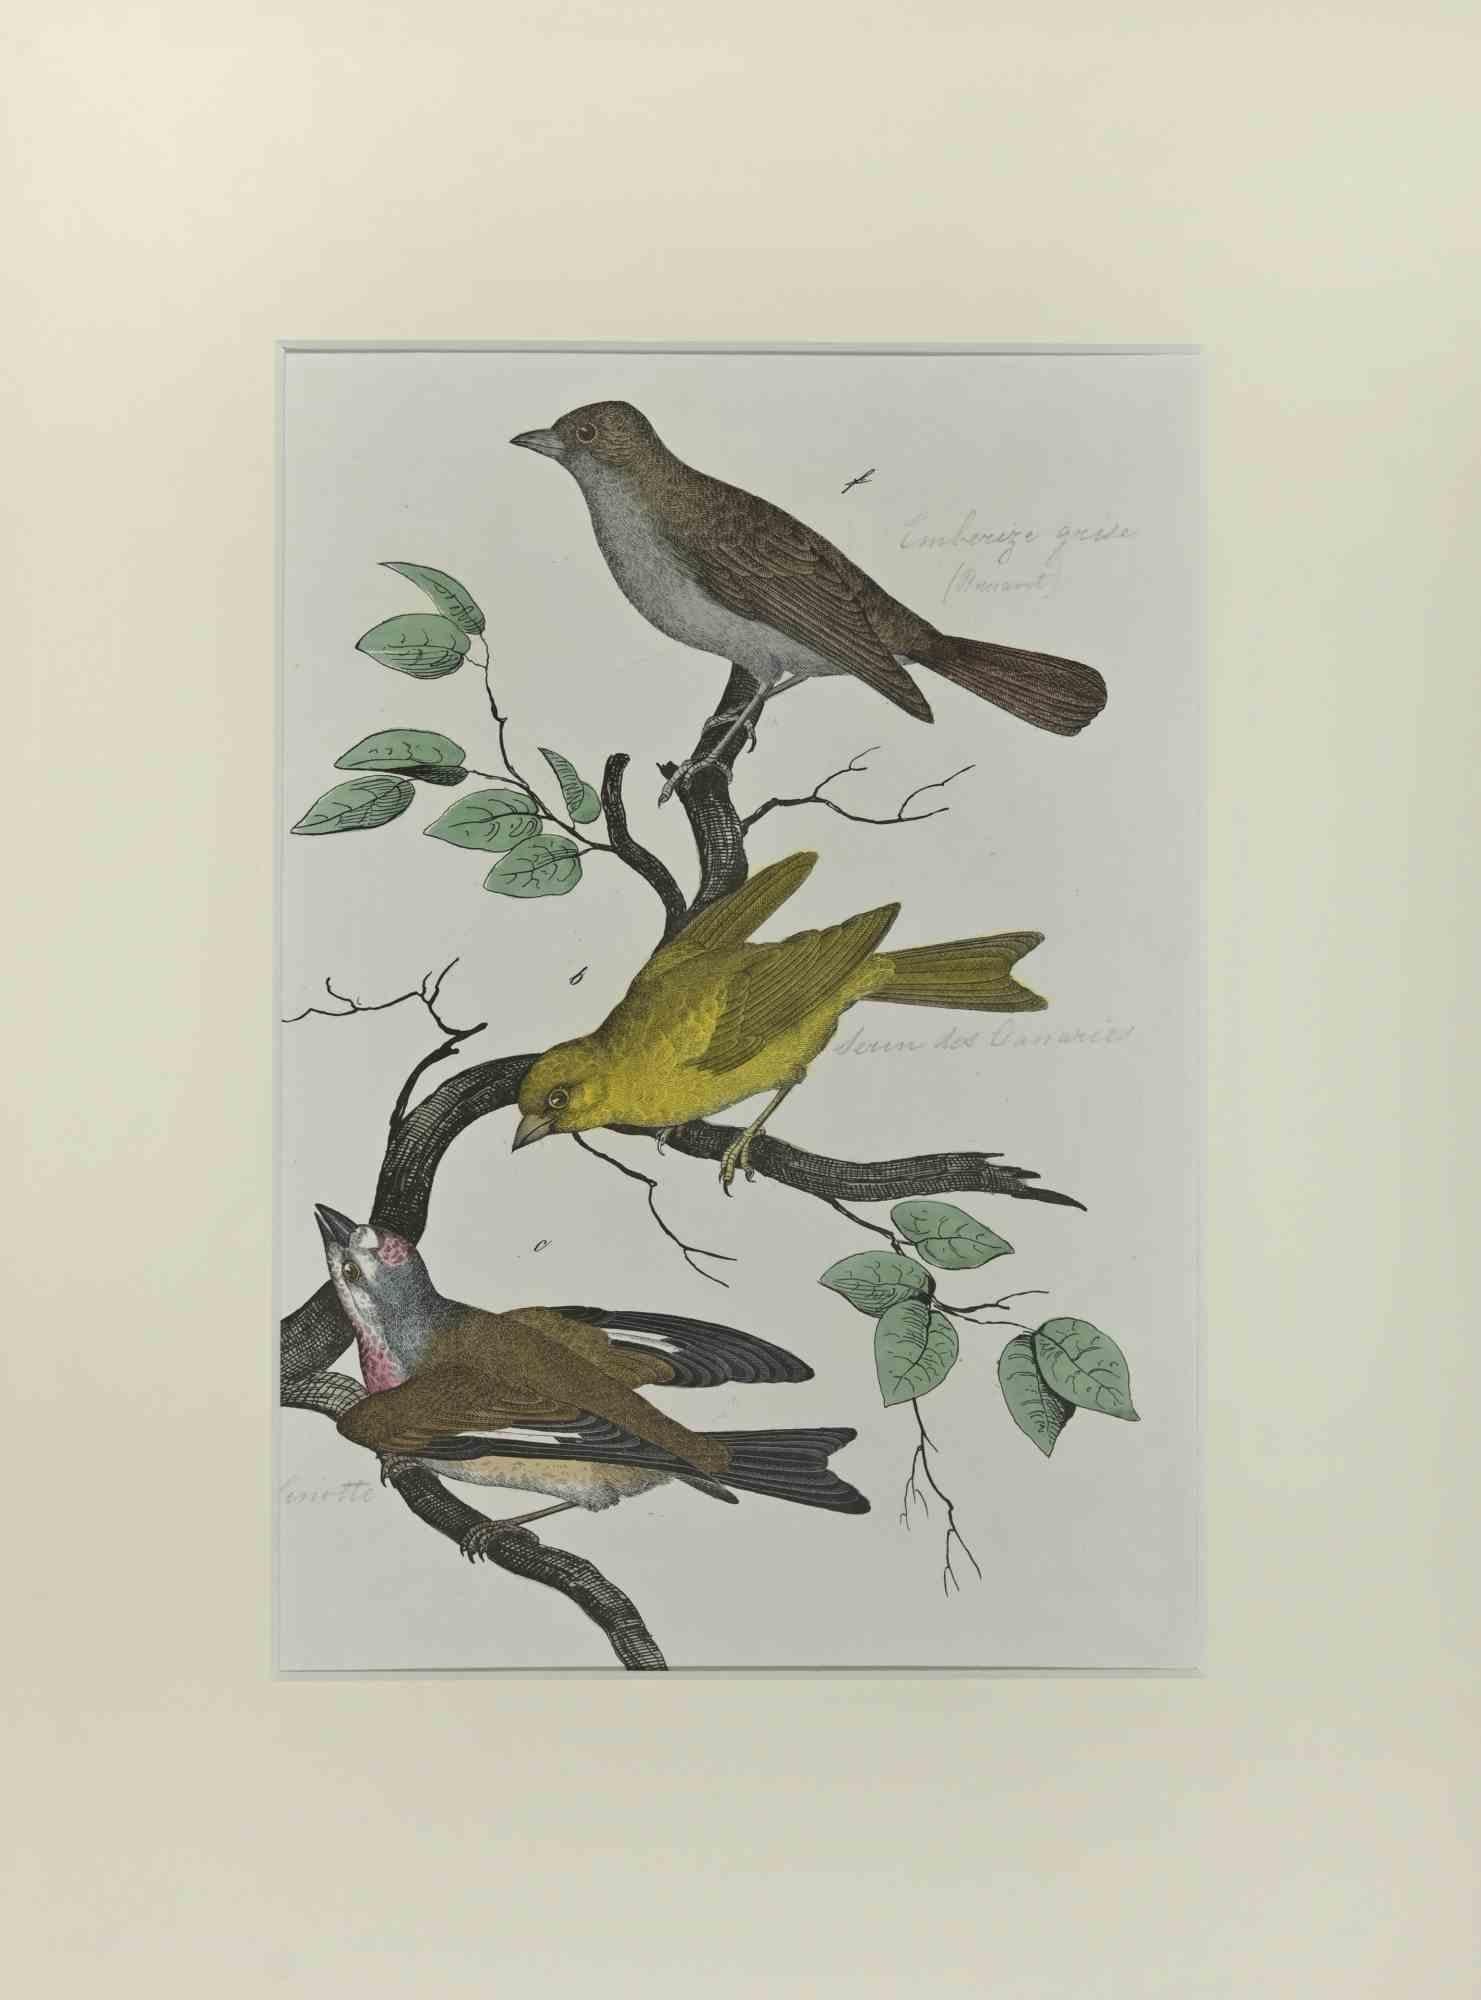 Wild Canary est une gravure à l'eau-forte réalisée à la main par Gotthilf Heinrich von Schubert - Johann Friedrich Naumann, Illustration tirée de Natural history of birds in pictures, publié par Stuttgart et Esslingen, Schreiber et Schill 1840 ca.